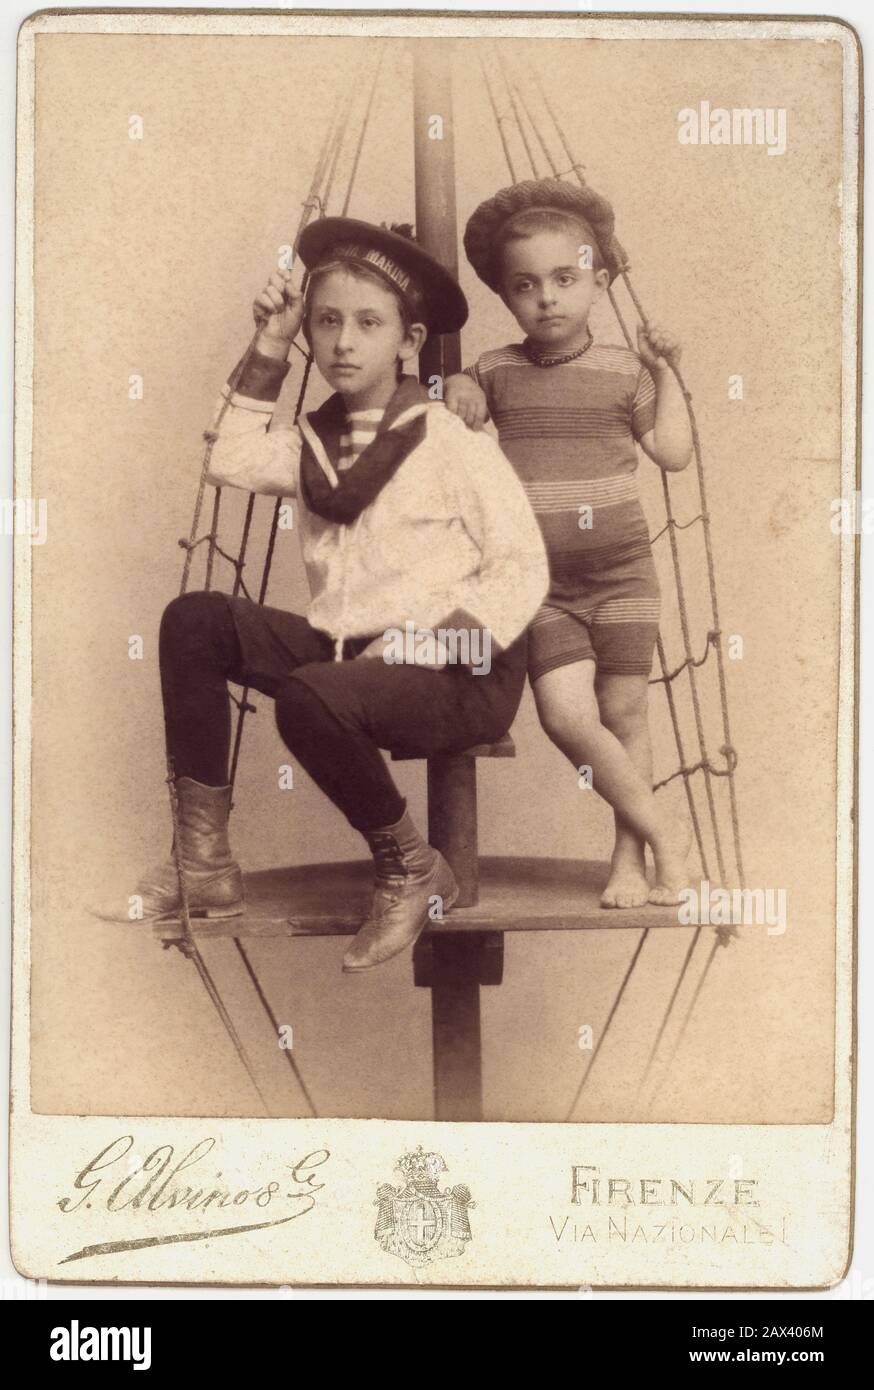 1885 ca , FIRENZE ,  ITALY  : Two little child dressed like a sailors , from undentified nobility family in Florence . Photo by G. Alvino , Firenze - FOTO STORICHE - HISTORY PHOTOS - BAMBINO - BAMBINI - CHILDREN - CHILD - BABY - FASHION - MODA - CHILDHOOD - hat - cappello da marinaio - marinaretto - vestito alla marinara - marinaretta - ITALIA - BABY  - INFANZIA - OTTOCENTO - '800 - 800's - XIX CENTURY - mare - sea - swimsuit - costume da bagno - nobiltà italiana - italian nobility - nobili italiani ----  Archivio GBB Stock Photo